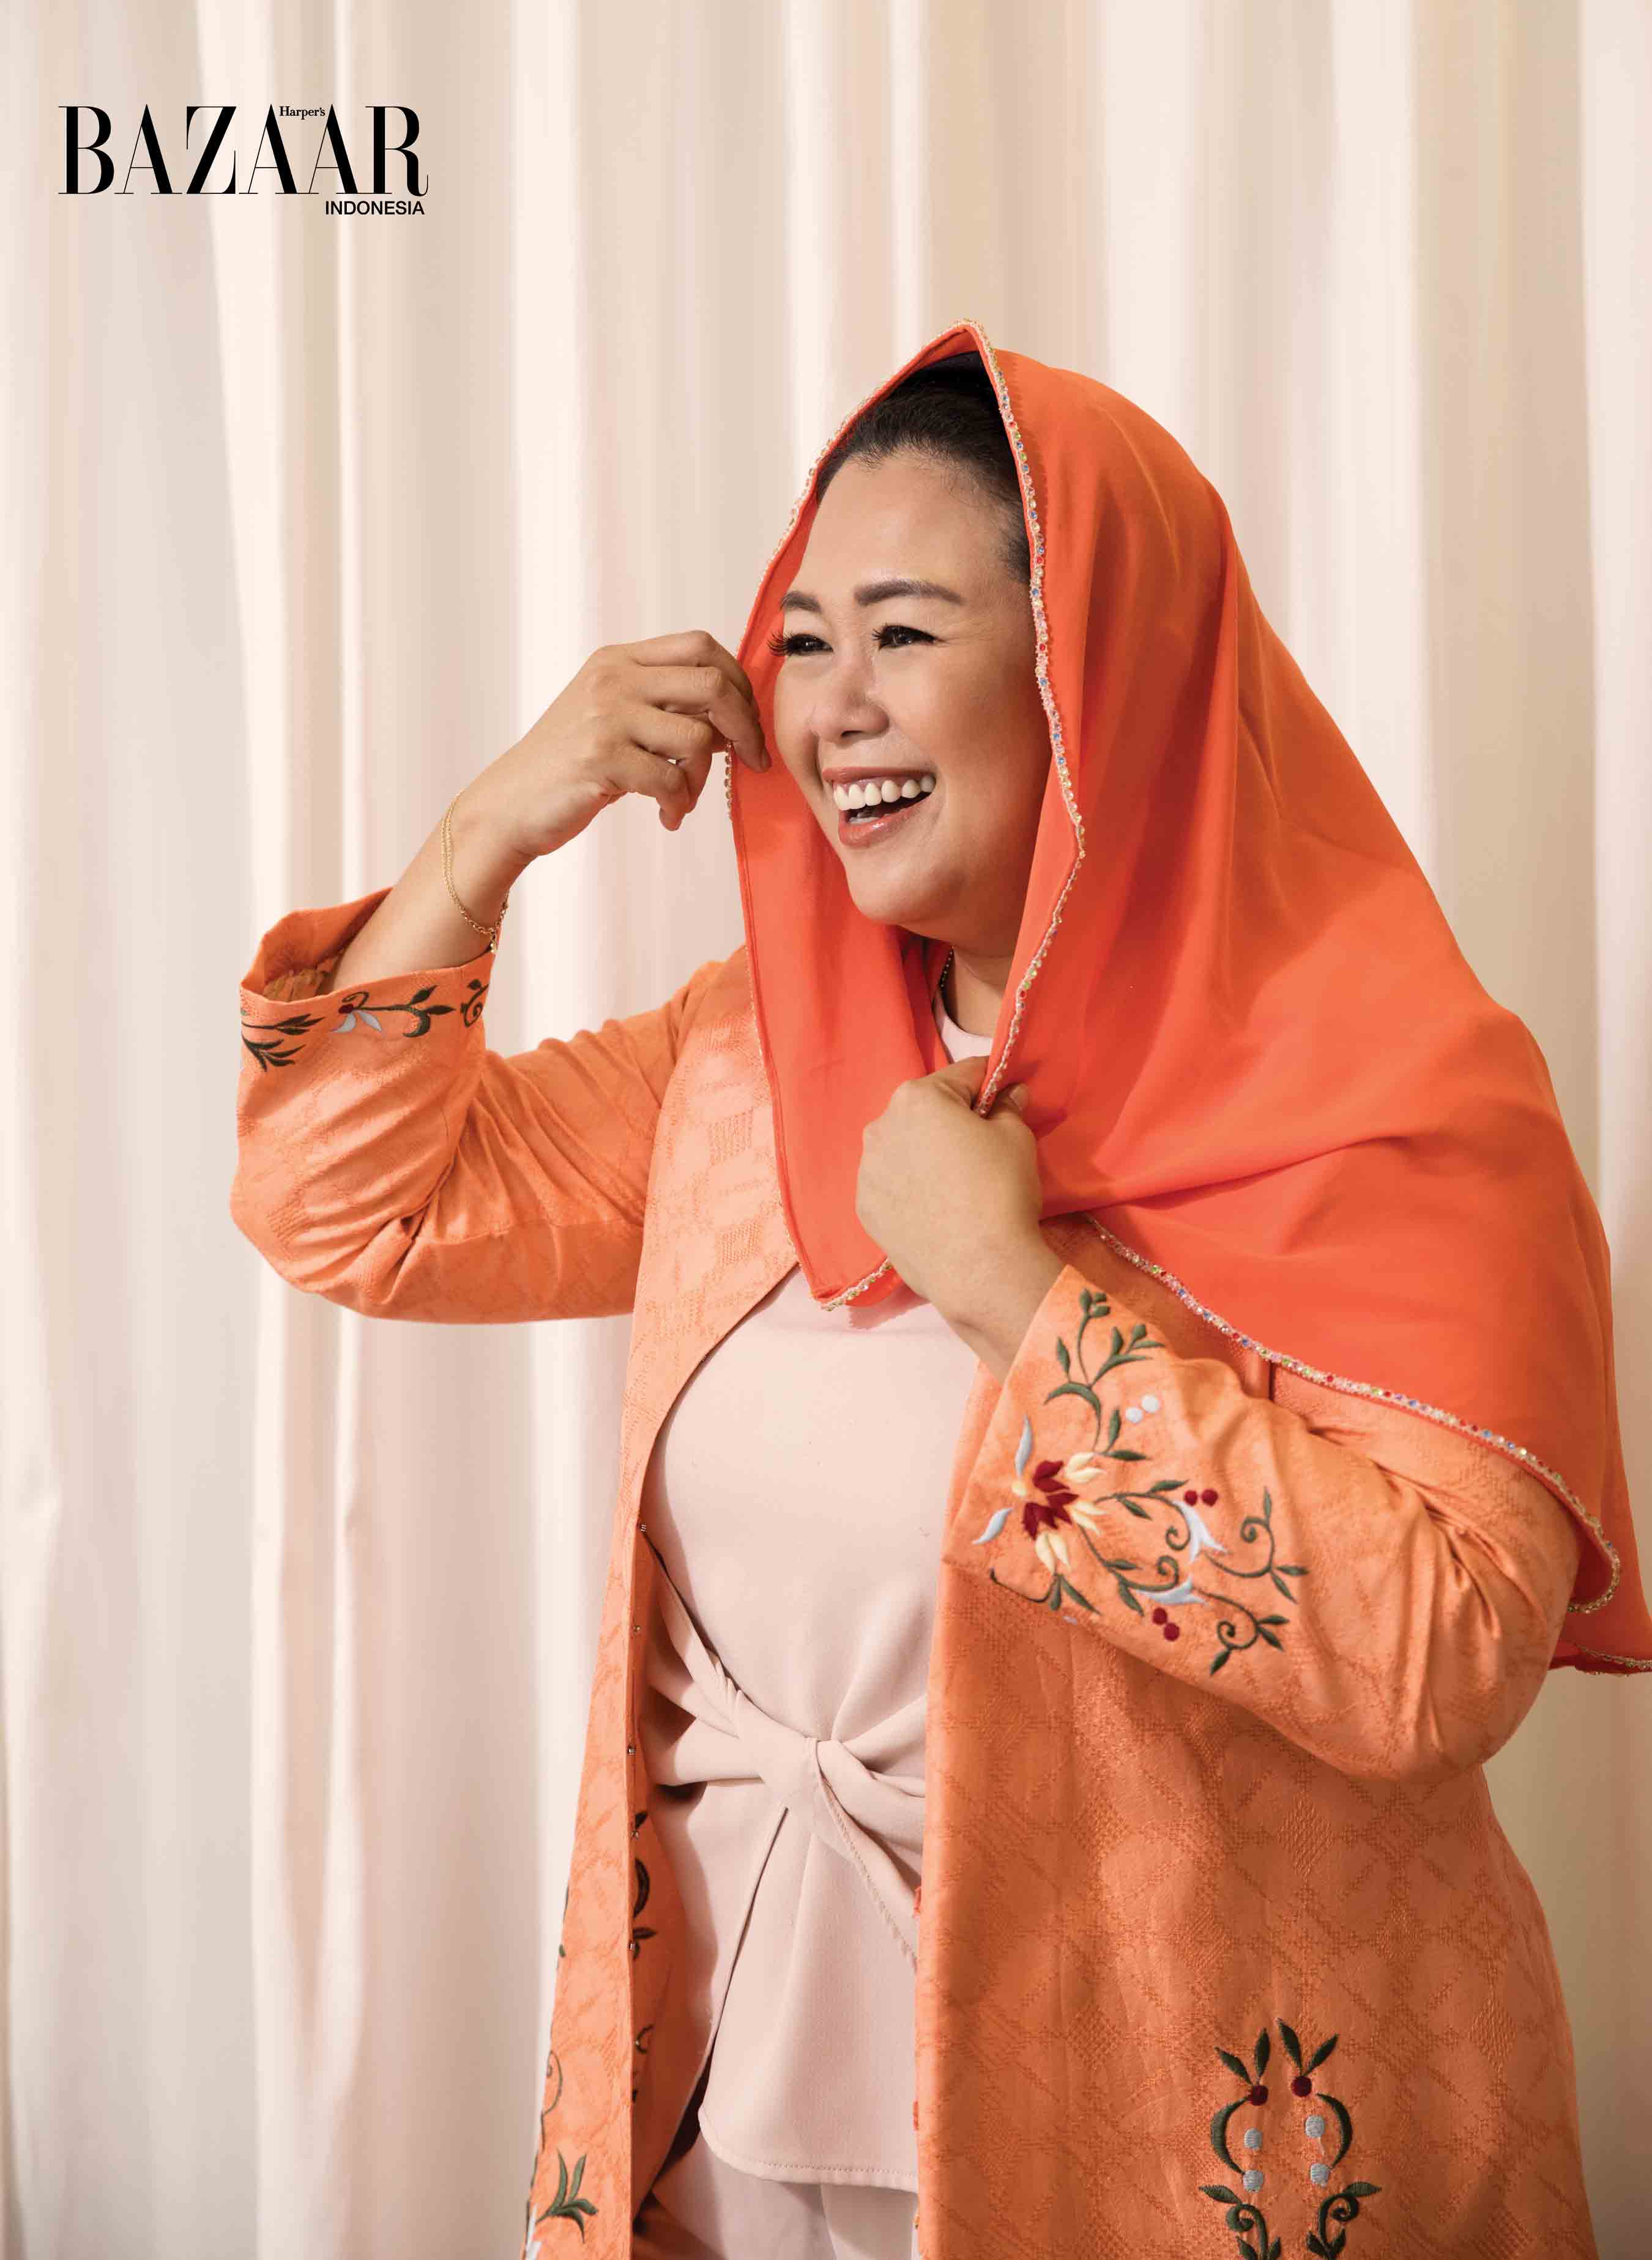 Yenny Wahid difoto oleh Insan Obi untuk Harper's Bazaar Indonesia